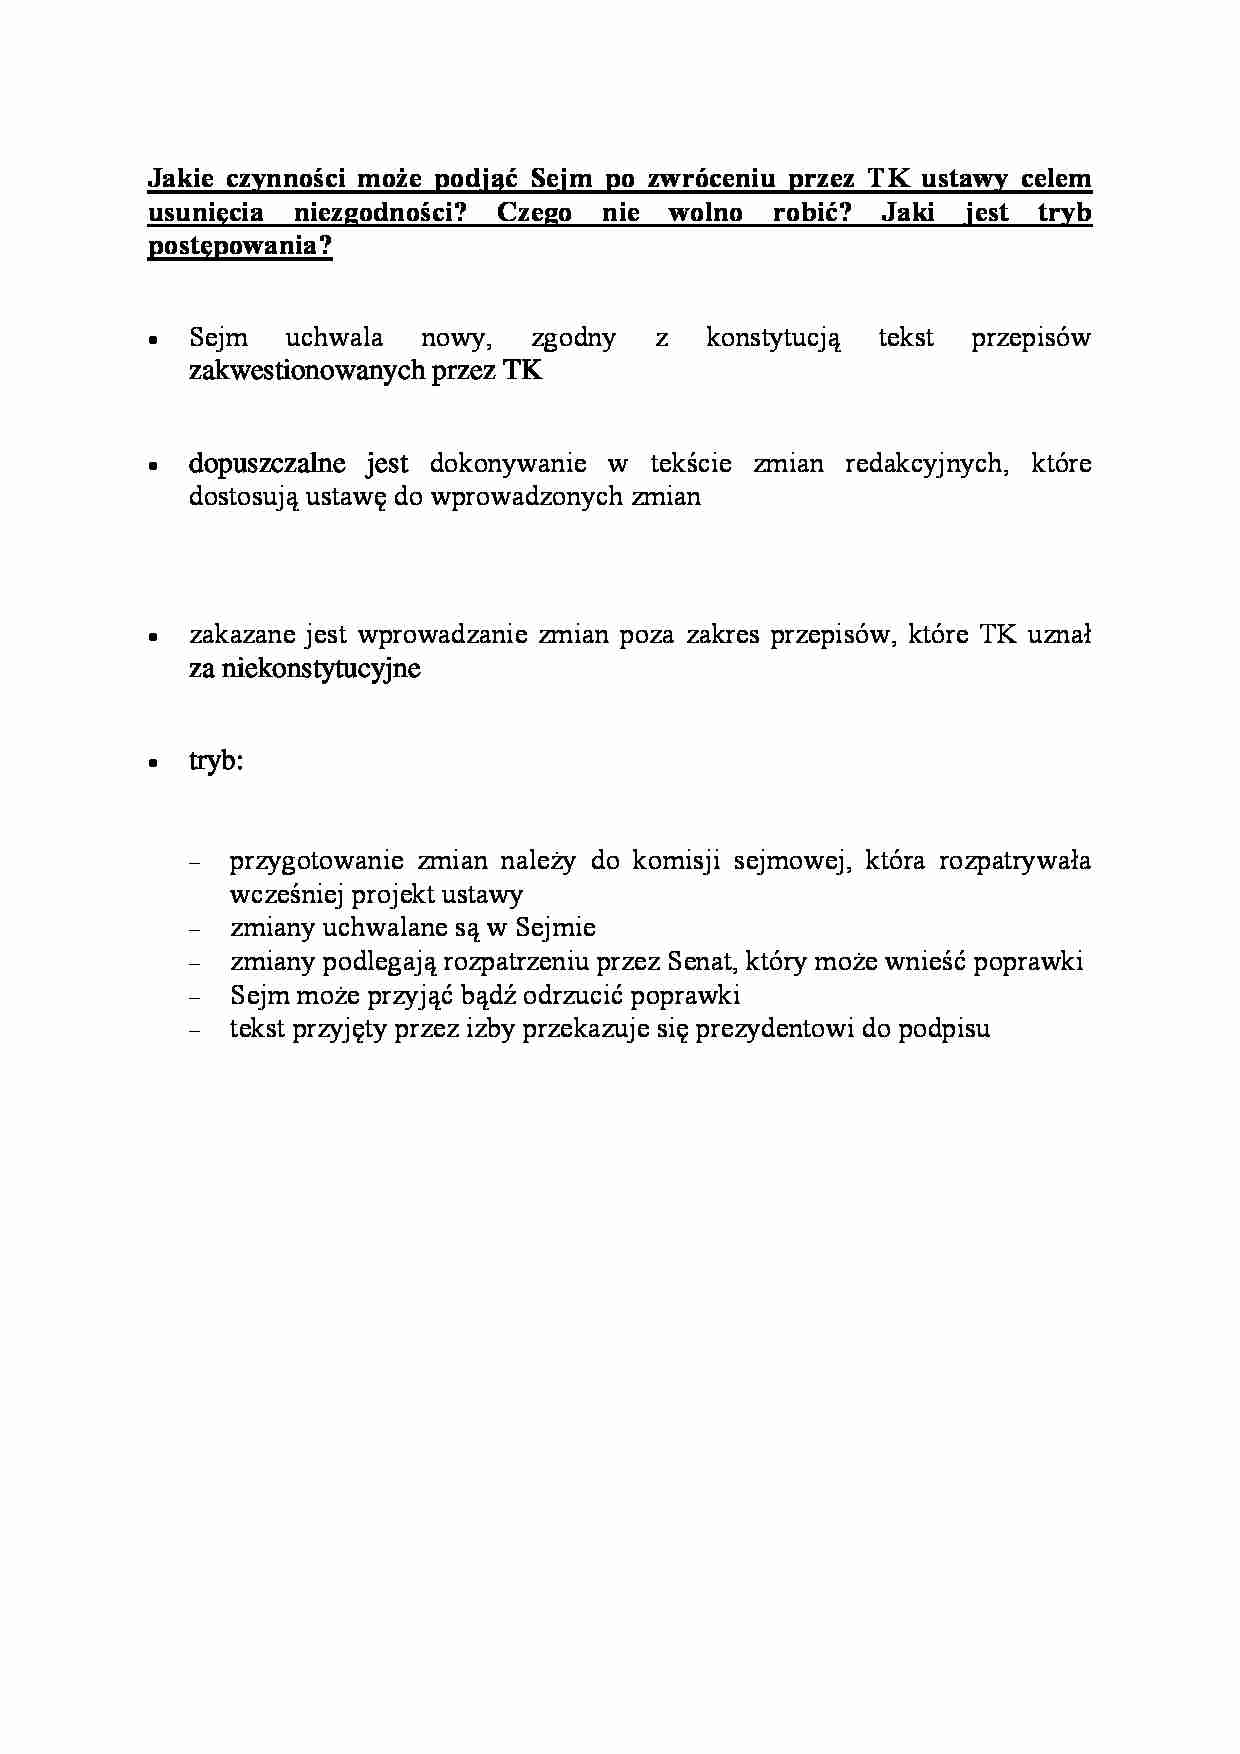 Czynności Sejmu po zwróceniu przez TK ustawy celem usunięcia niezgodnośc-opracowaniei - strona 1